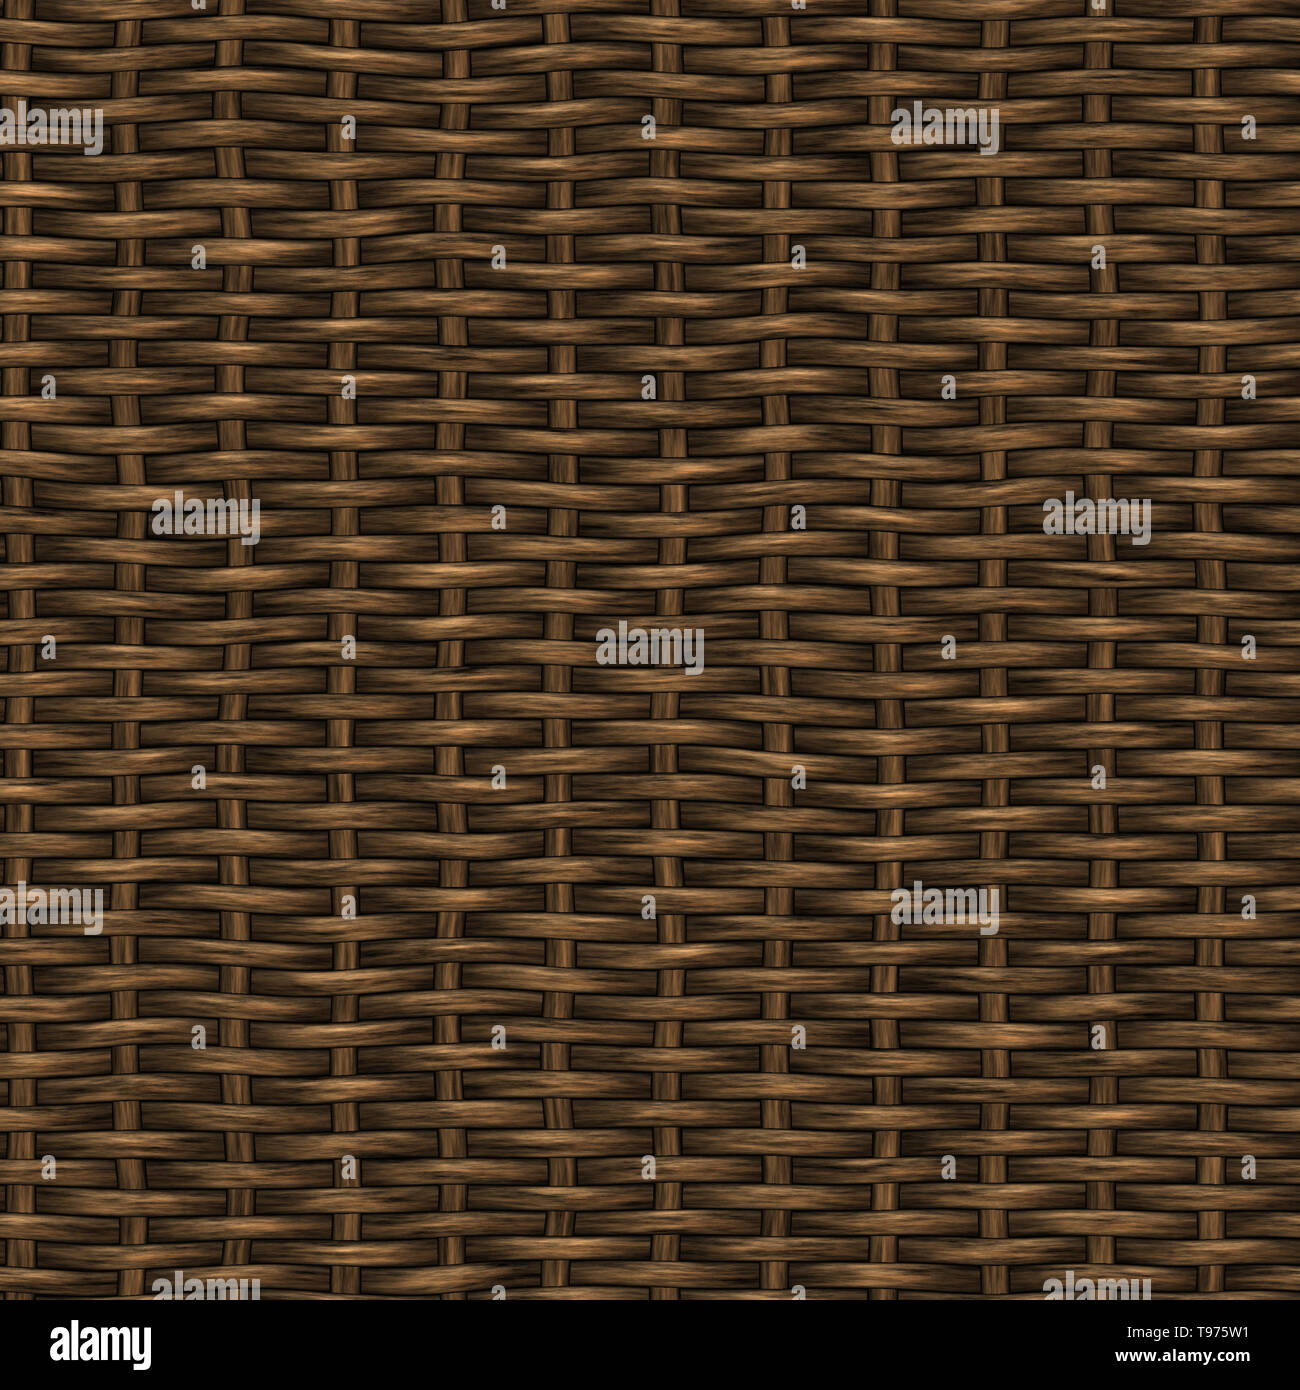 Rattan Seamless Texture Tile Stock Photo